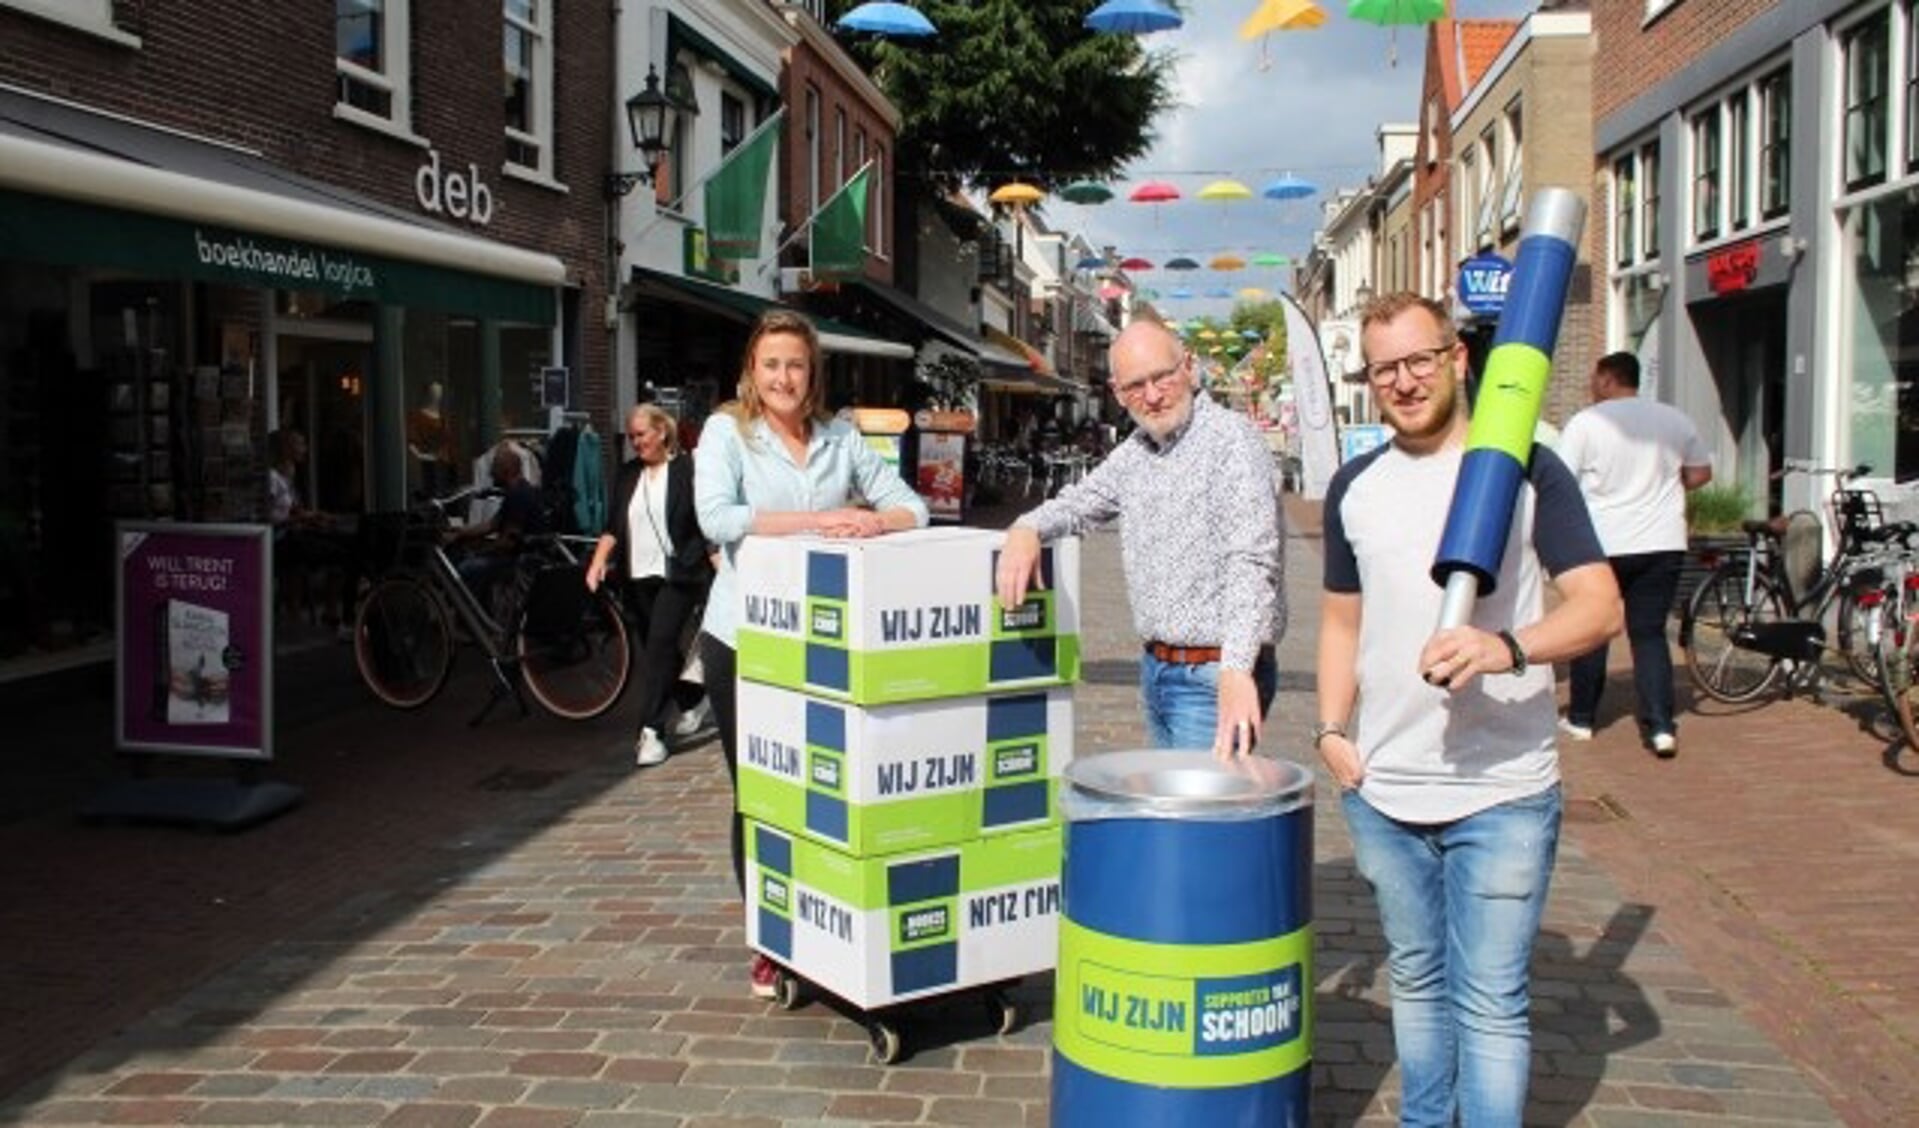 Stefanie Cozijn van RMN zorgt met Frits en Stephan Mulder voor extra afvalbakken en peukenpalen in de winkelstraten. (Foto: Lysette Verwegen)